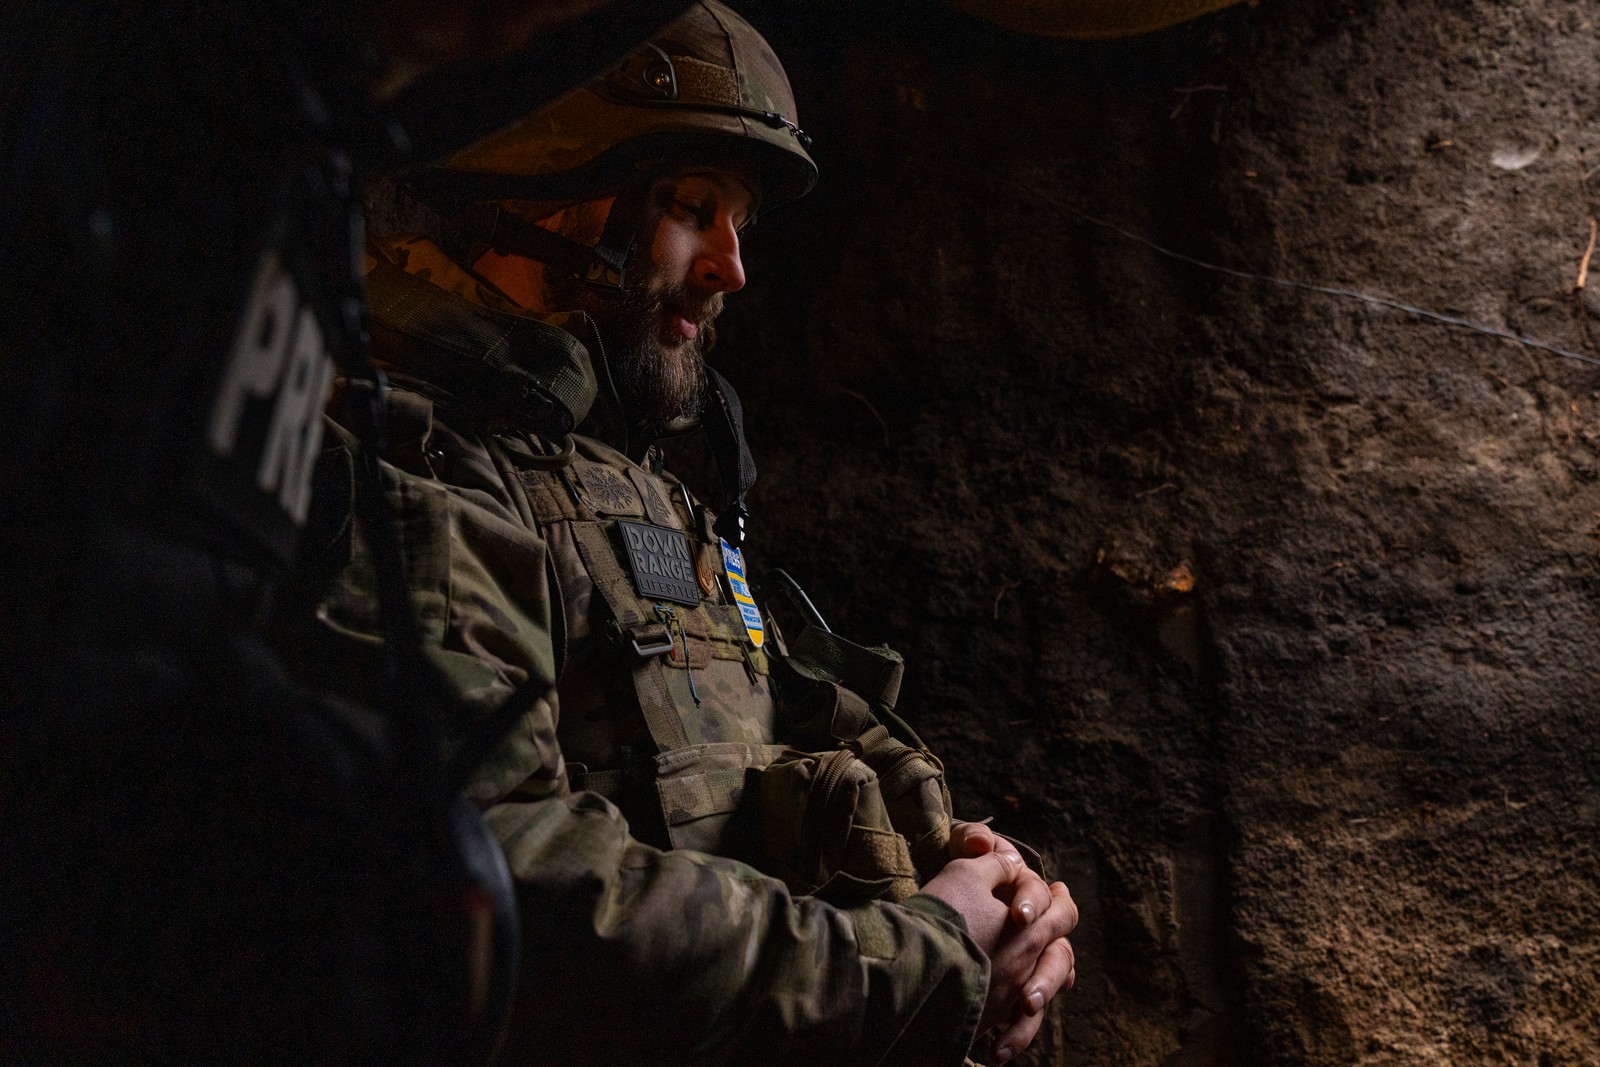 Soldado ucraniano aguarda na saída de um bunker o fim da atividade de drones russos que sobrevoam a área em busca de alvos ativos, como soldados ou peças de artilharia em atividade. Foto tirada em Chasiv Yar, Oblast de Donetsk, Ucrânia — Foto: Yan Boechat